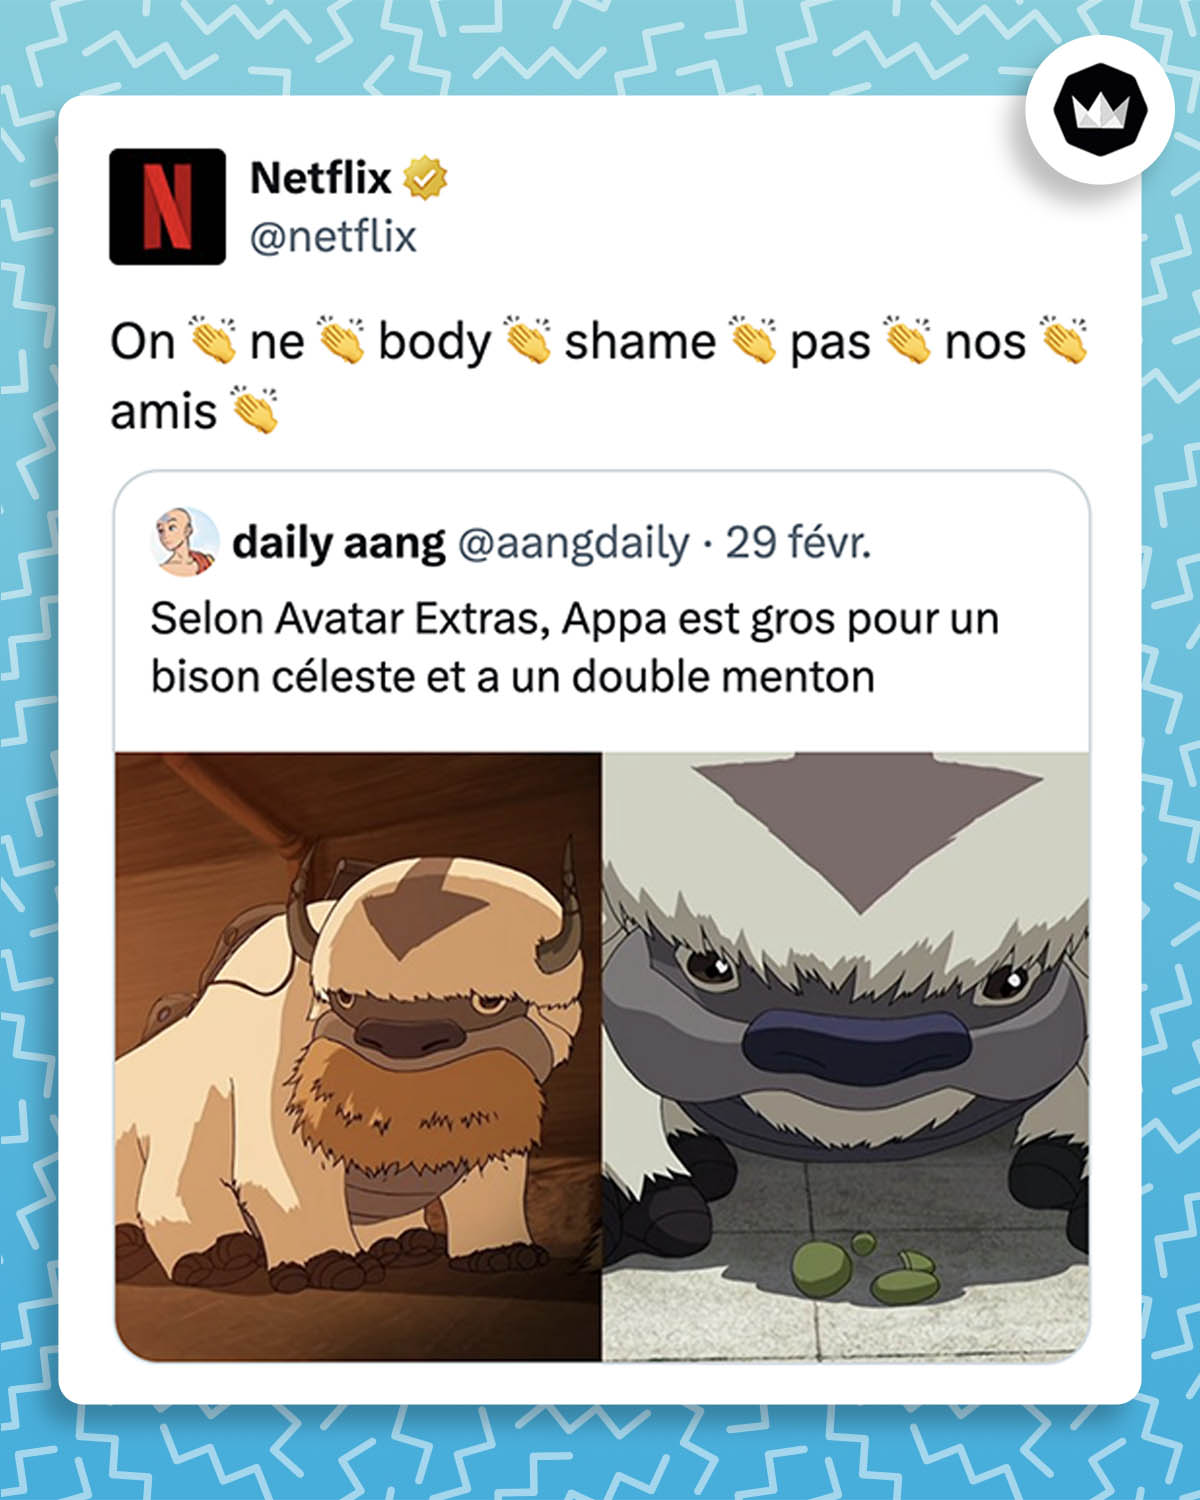 Netflix : On ne body shame pas nos amis
Internaute : Selon Avatar Extras, Appa est gros pour un bison céleste et a un double menton.